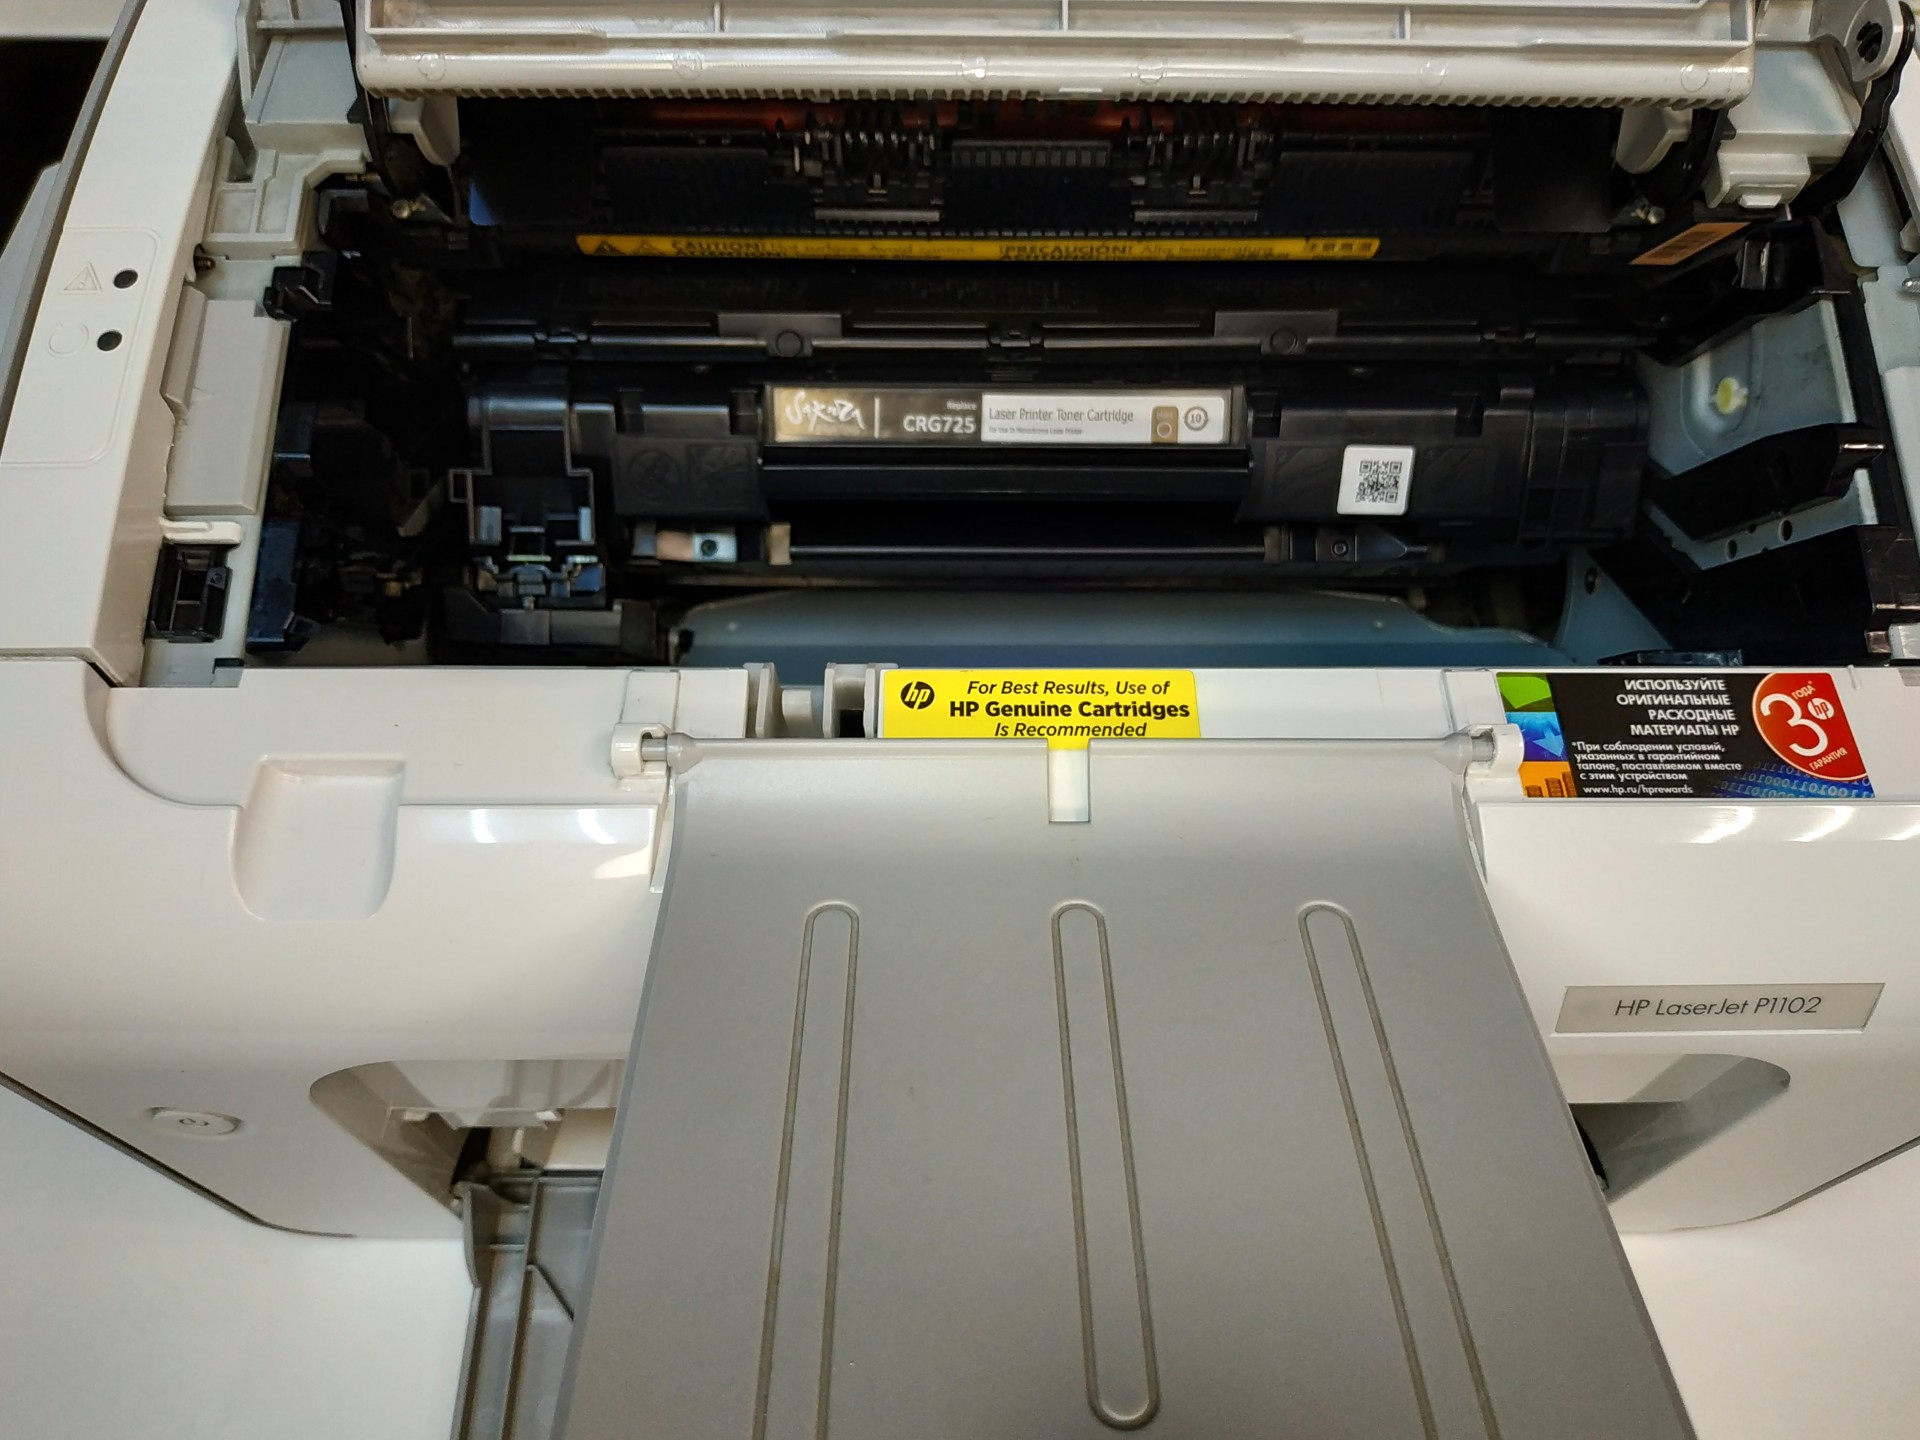 Принтер HP LaserJet 1102